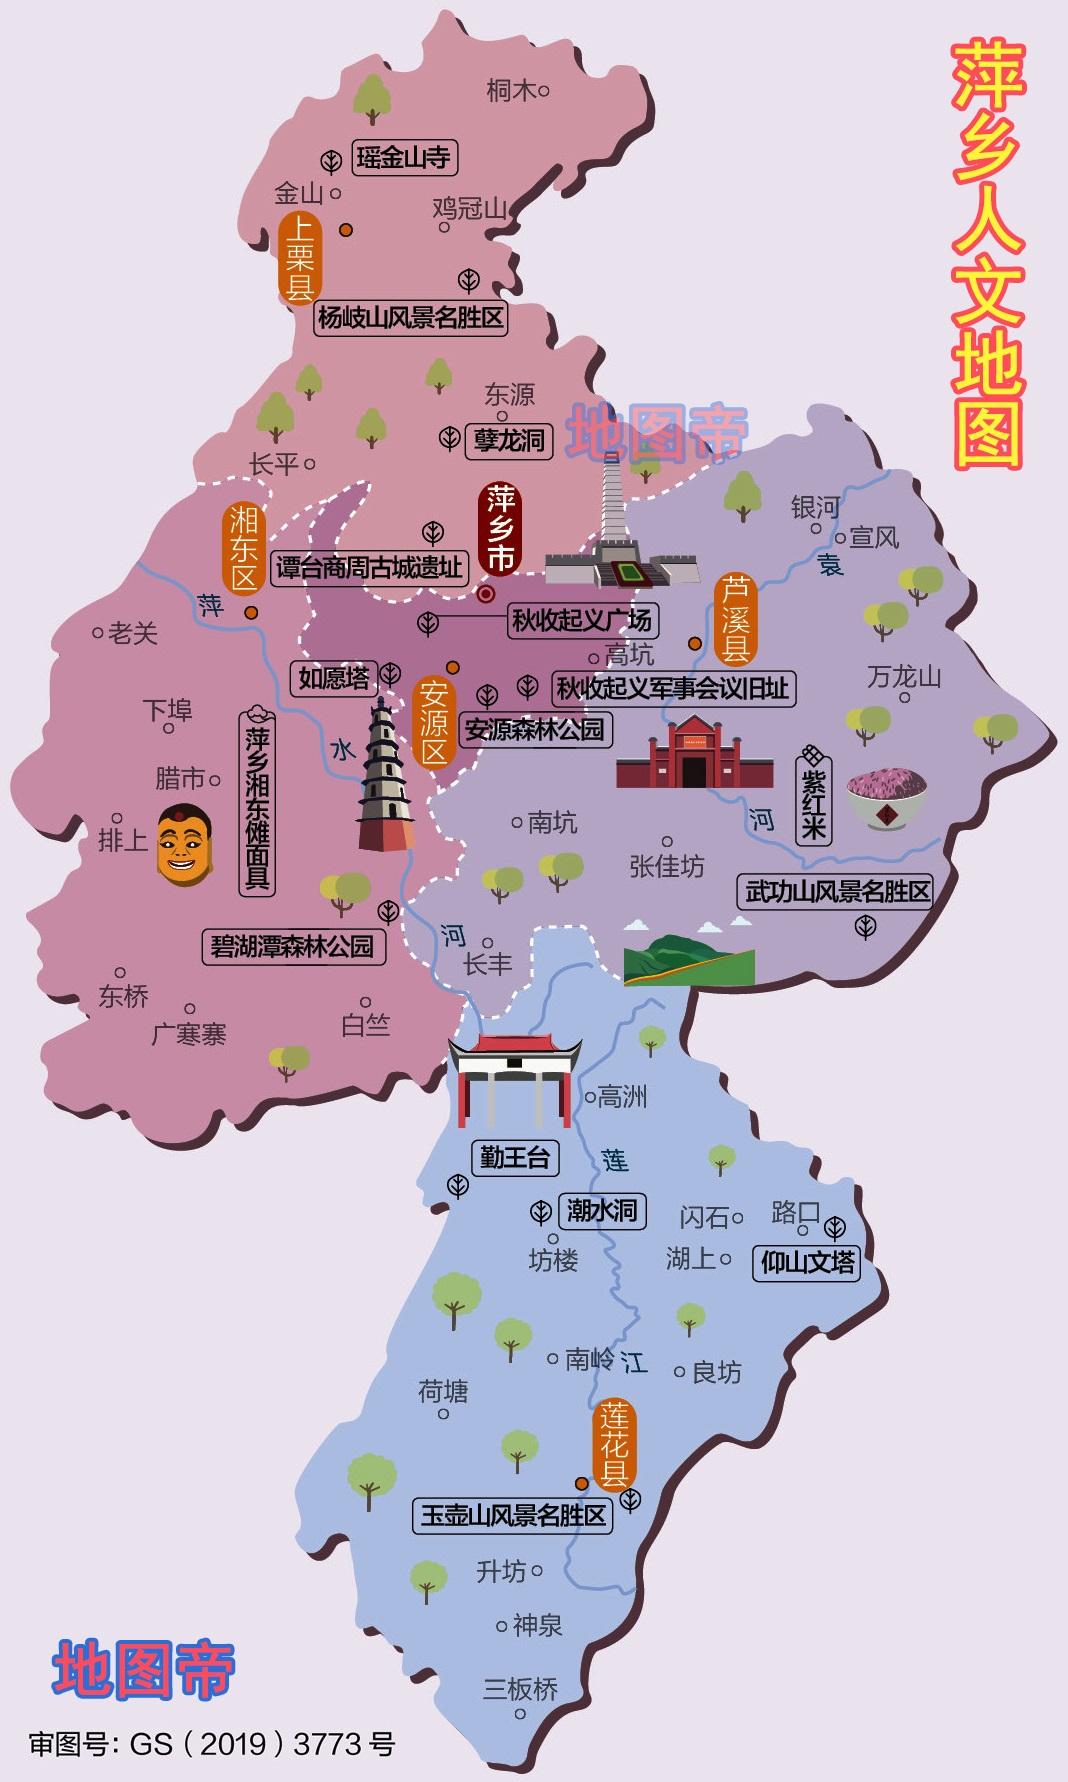 江西萍乡人口_2017年江西省萍乡市地区生产总值与常住人口情况分析